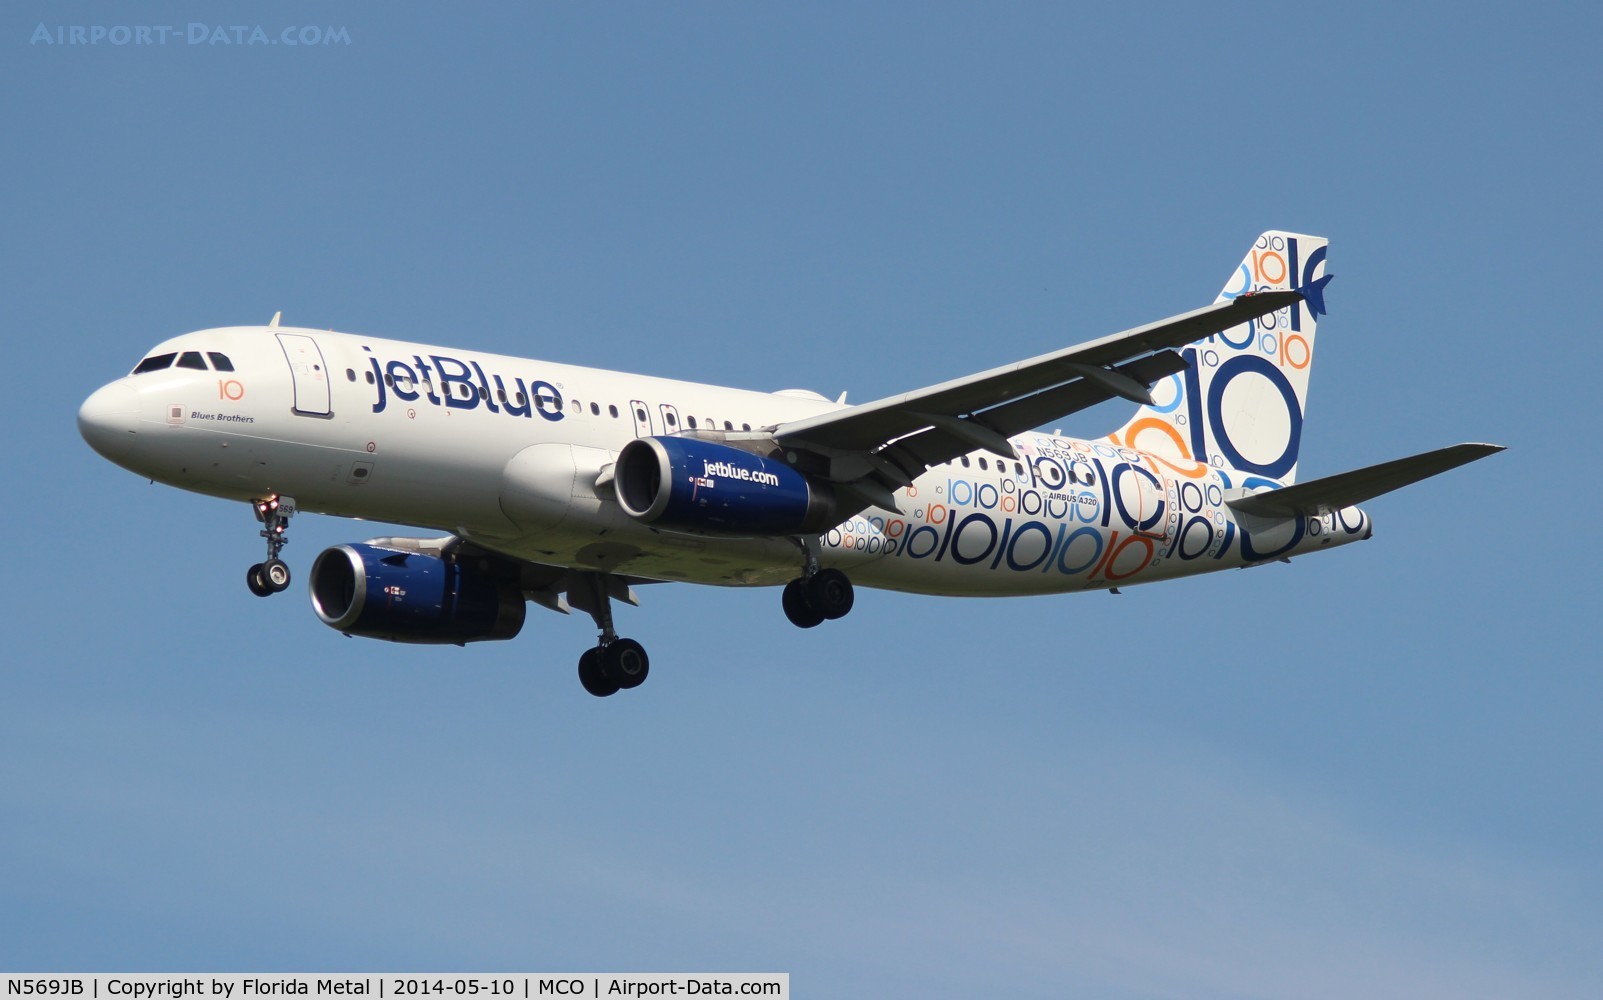 N569JB, 2003 Airbus A320-232 C/N 2075, Jet Blue 10 years